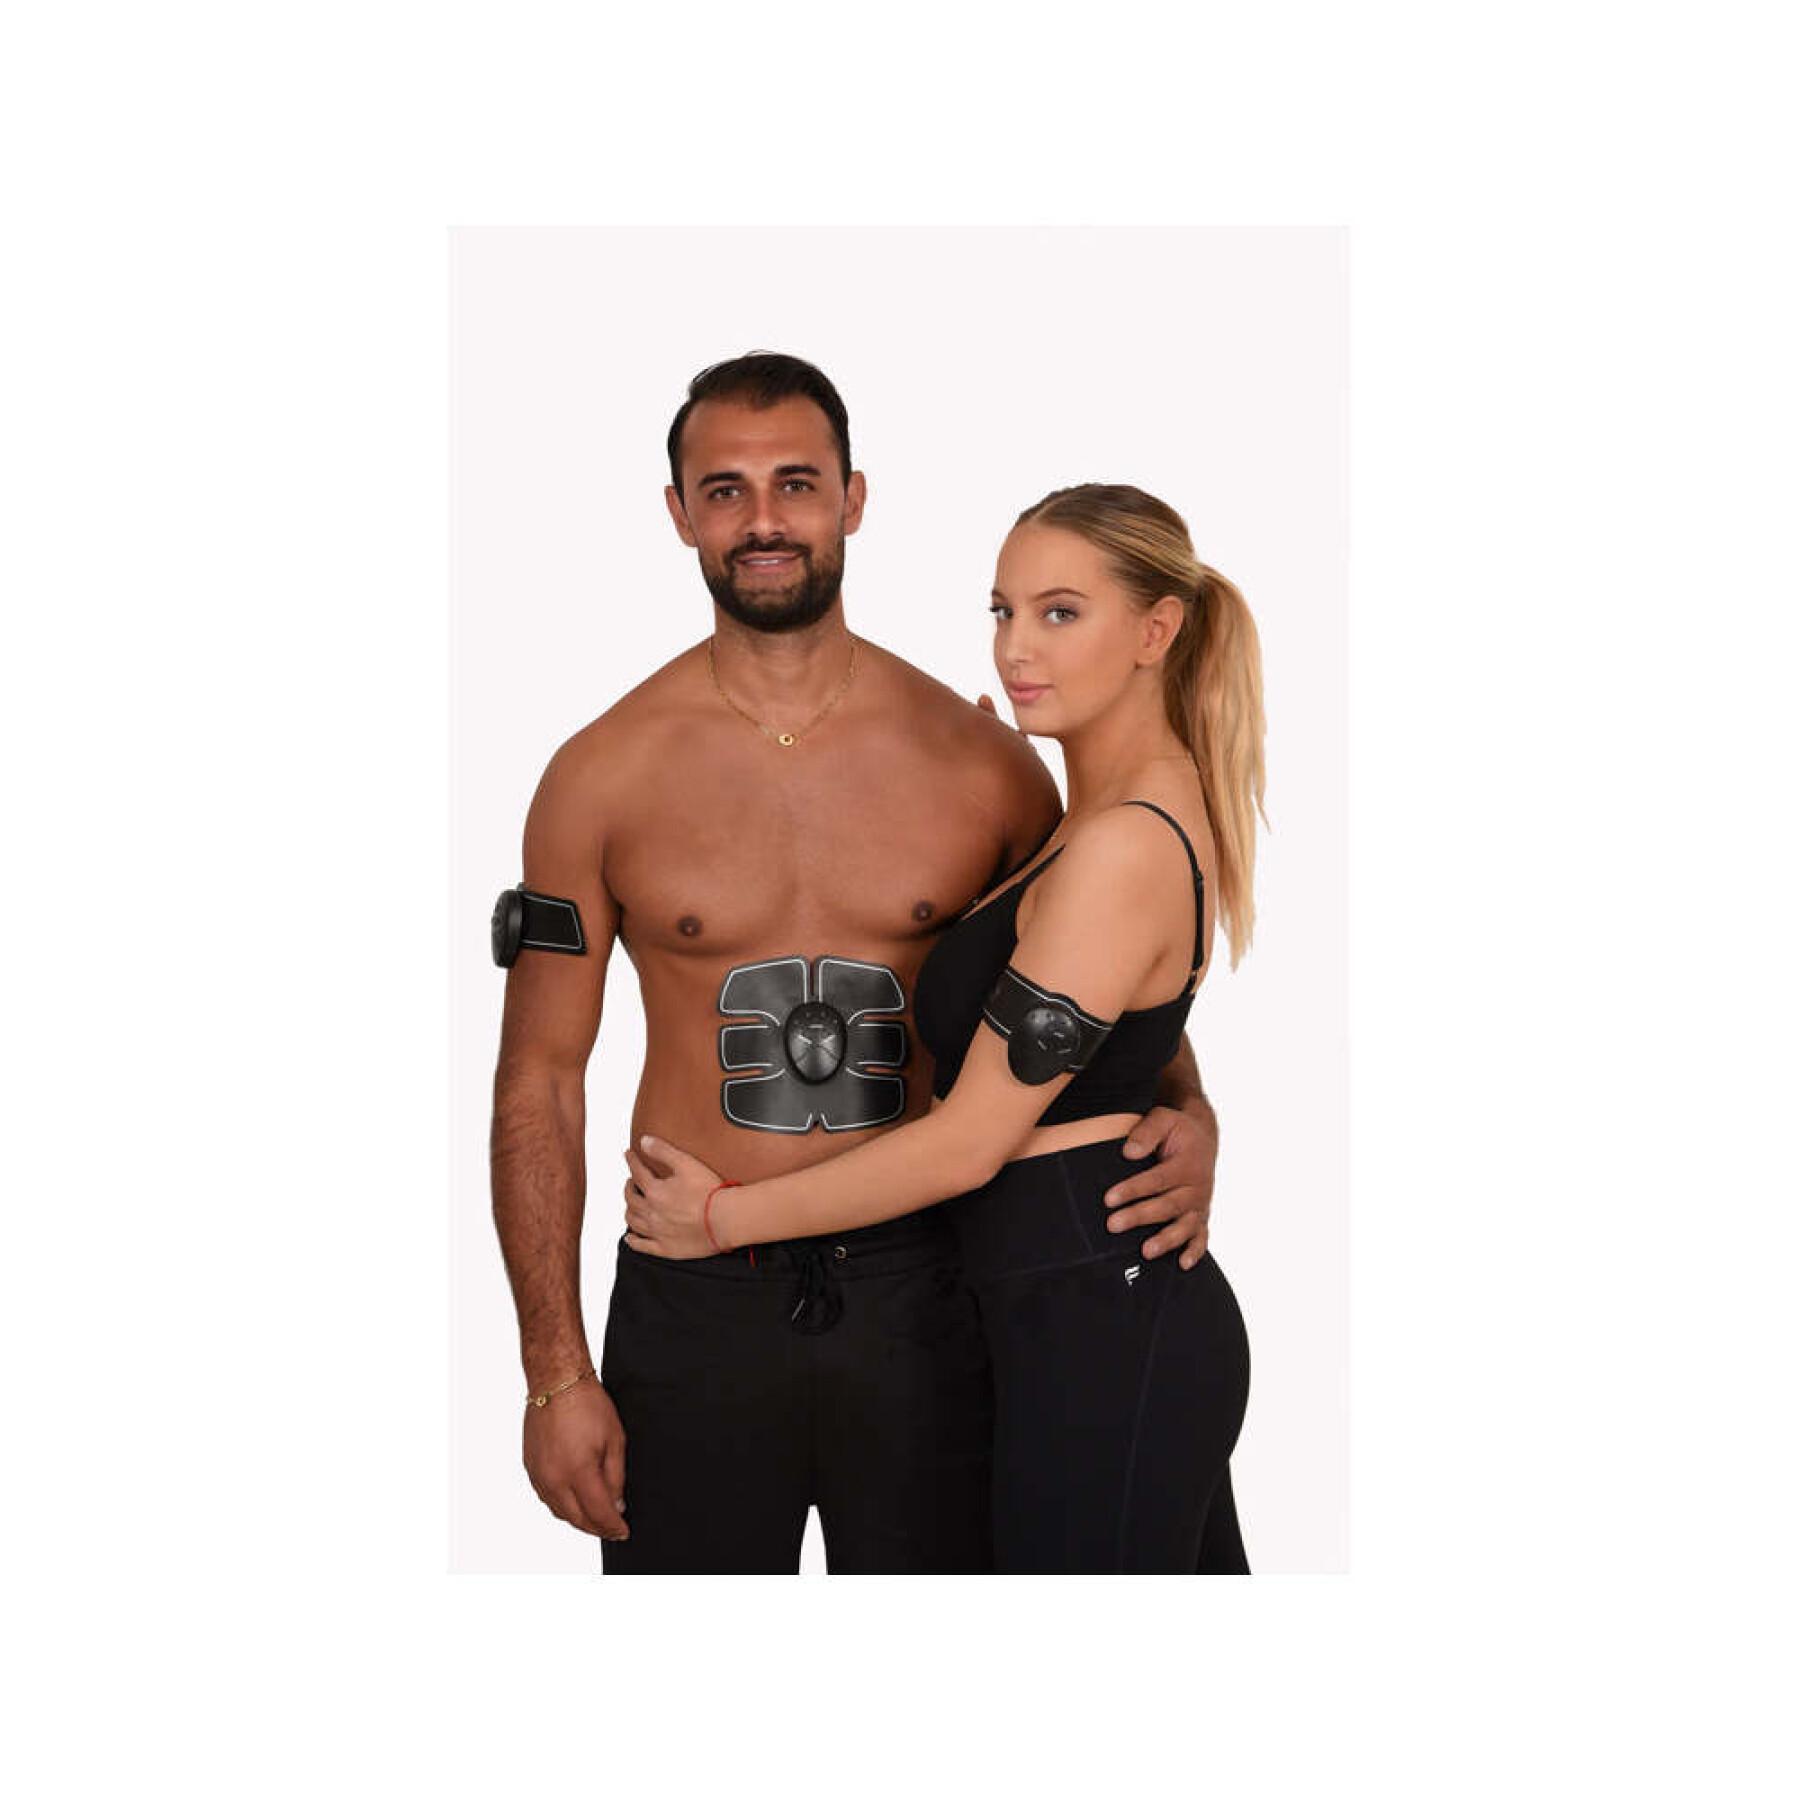 Estimulador muscular de abdomen, brazos y piernas Synerfit Fitness Elvea